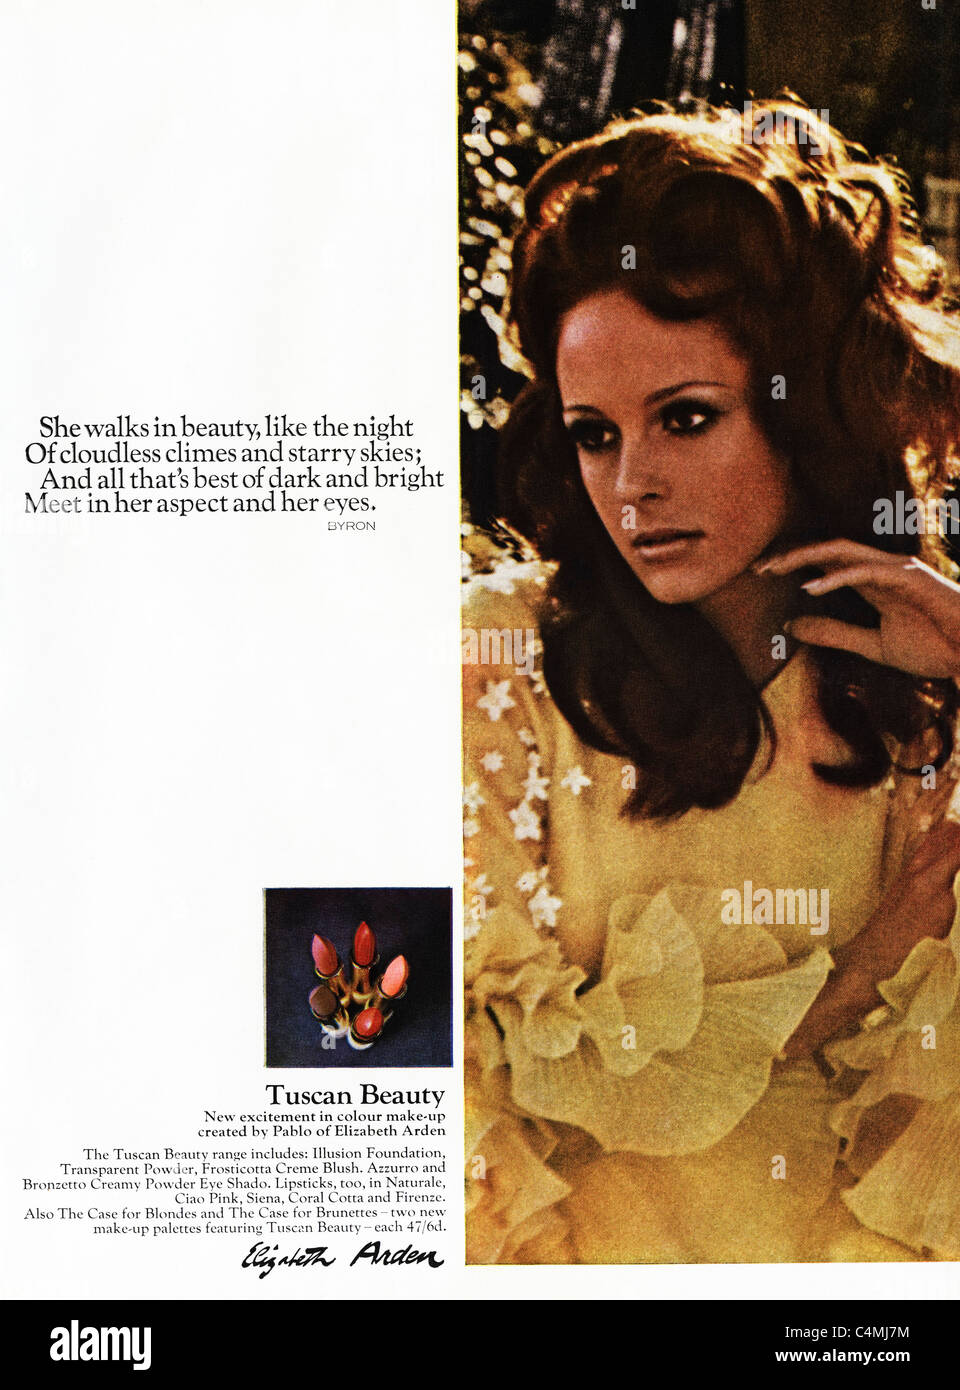 Pagina piena originale di annuncio nella rivista di moda circa 1969 per i prodotti cosmetici da Elizabeth Arden Foto Stock